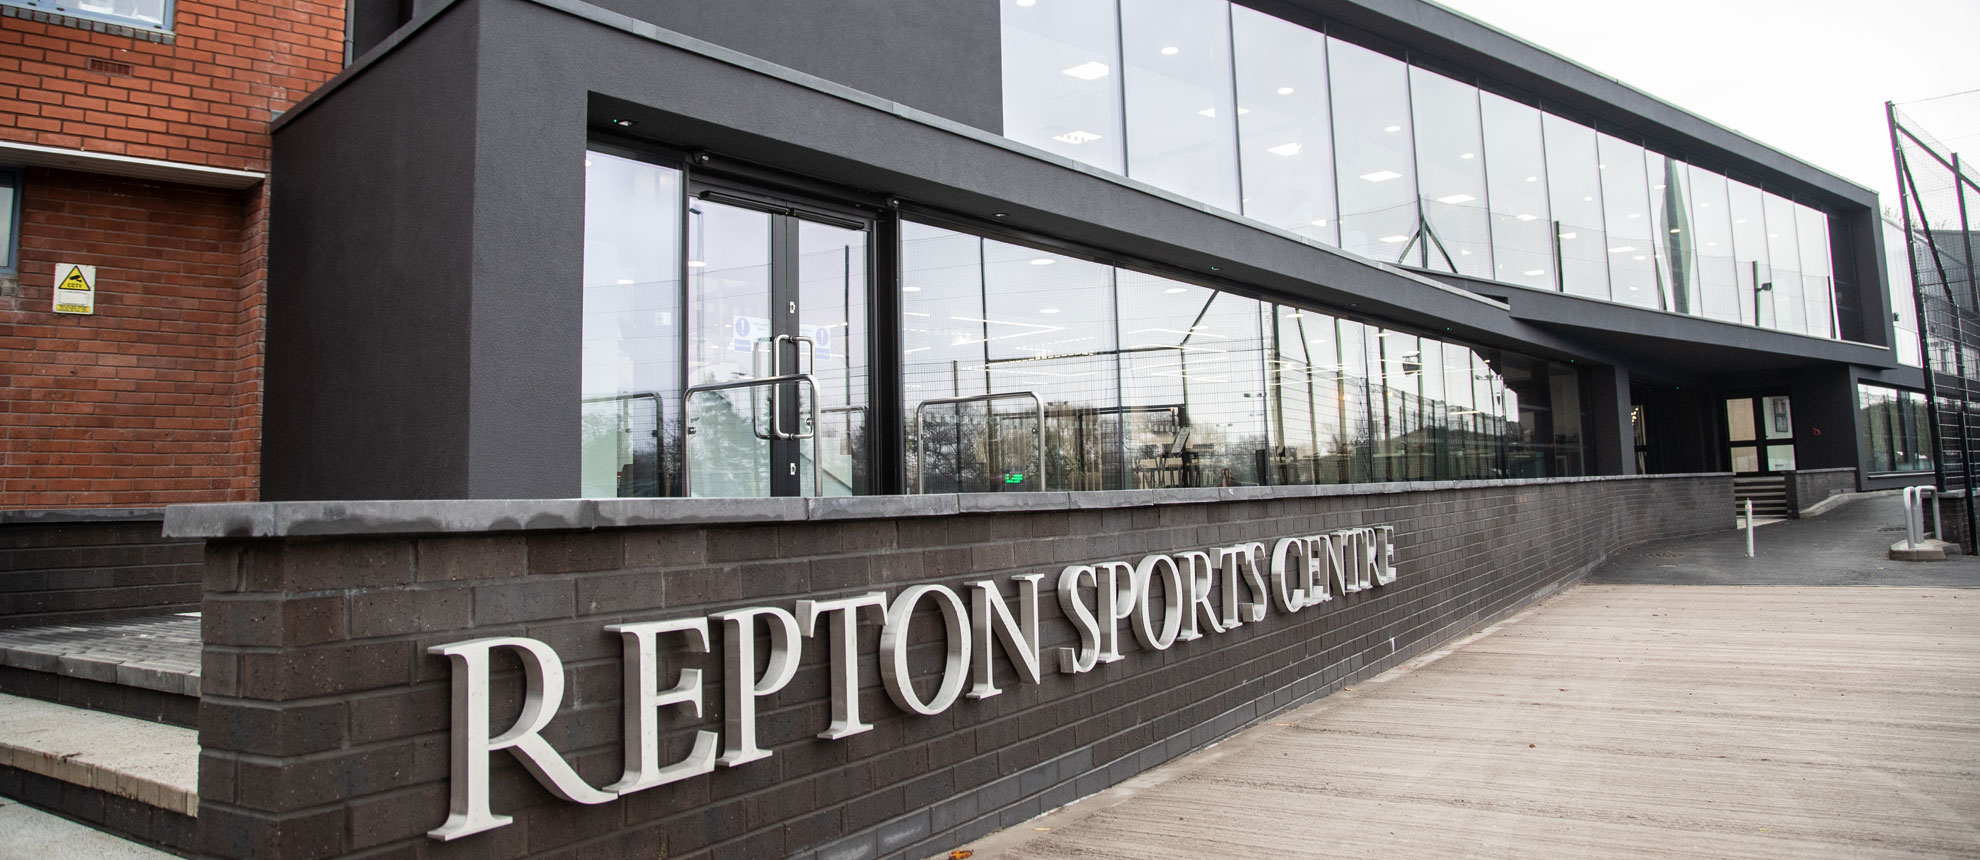 Repton School Sports Centre